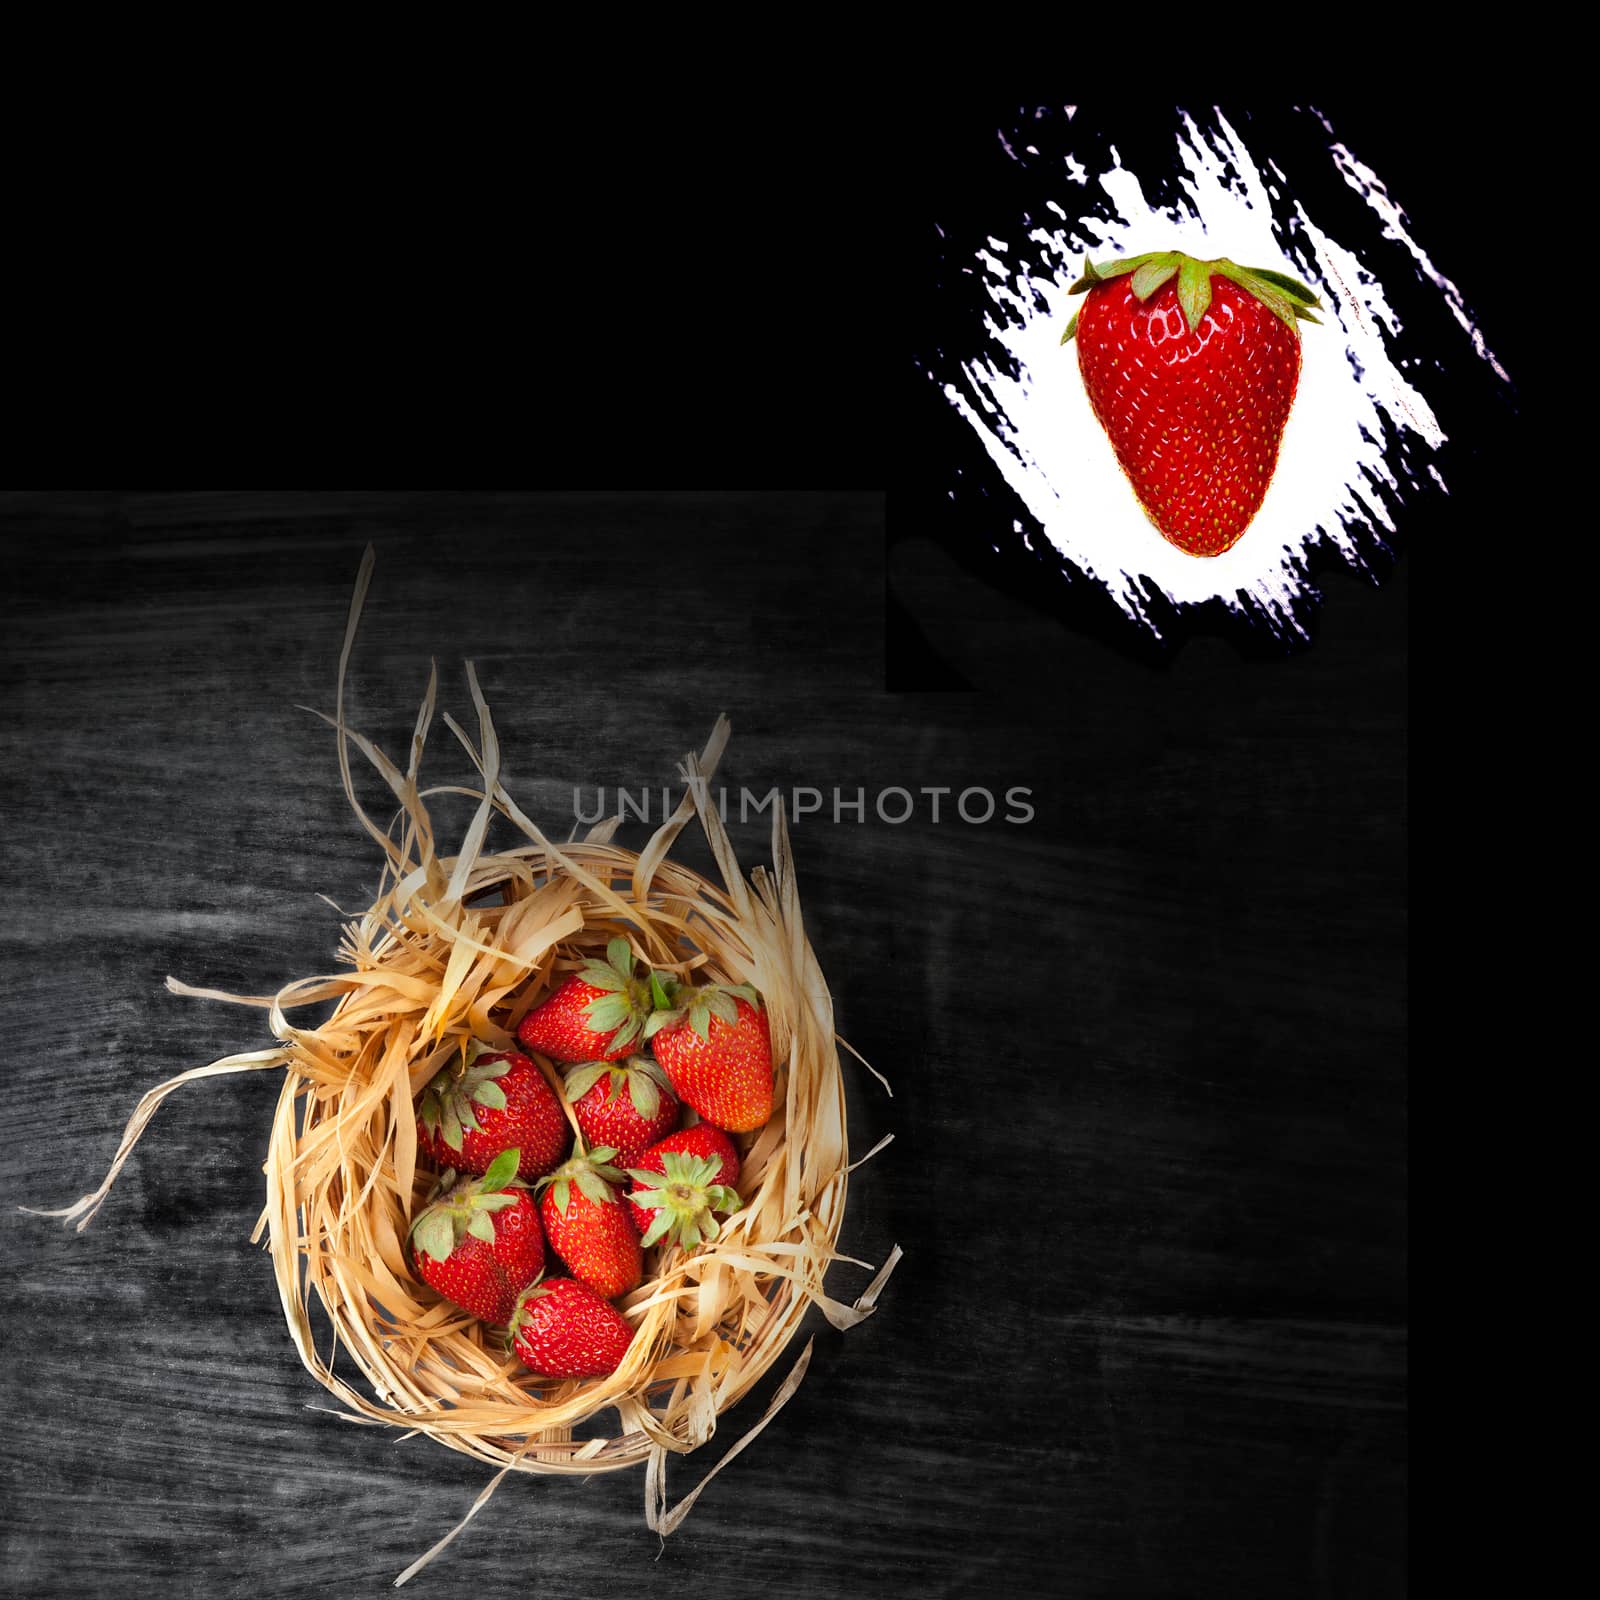 strawberries in a basket - wooden  dark background